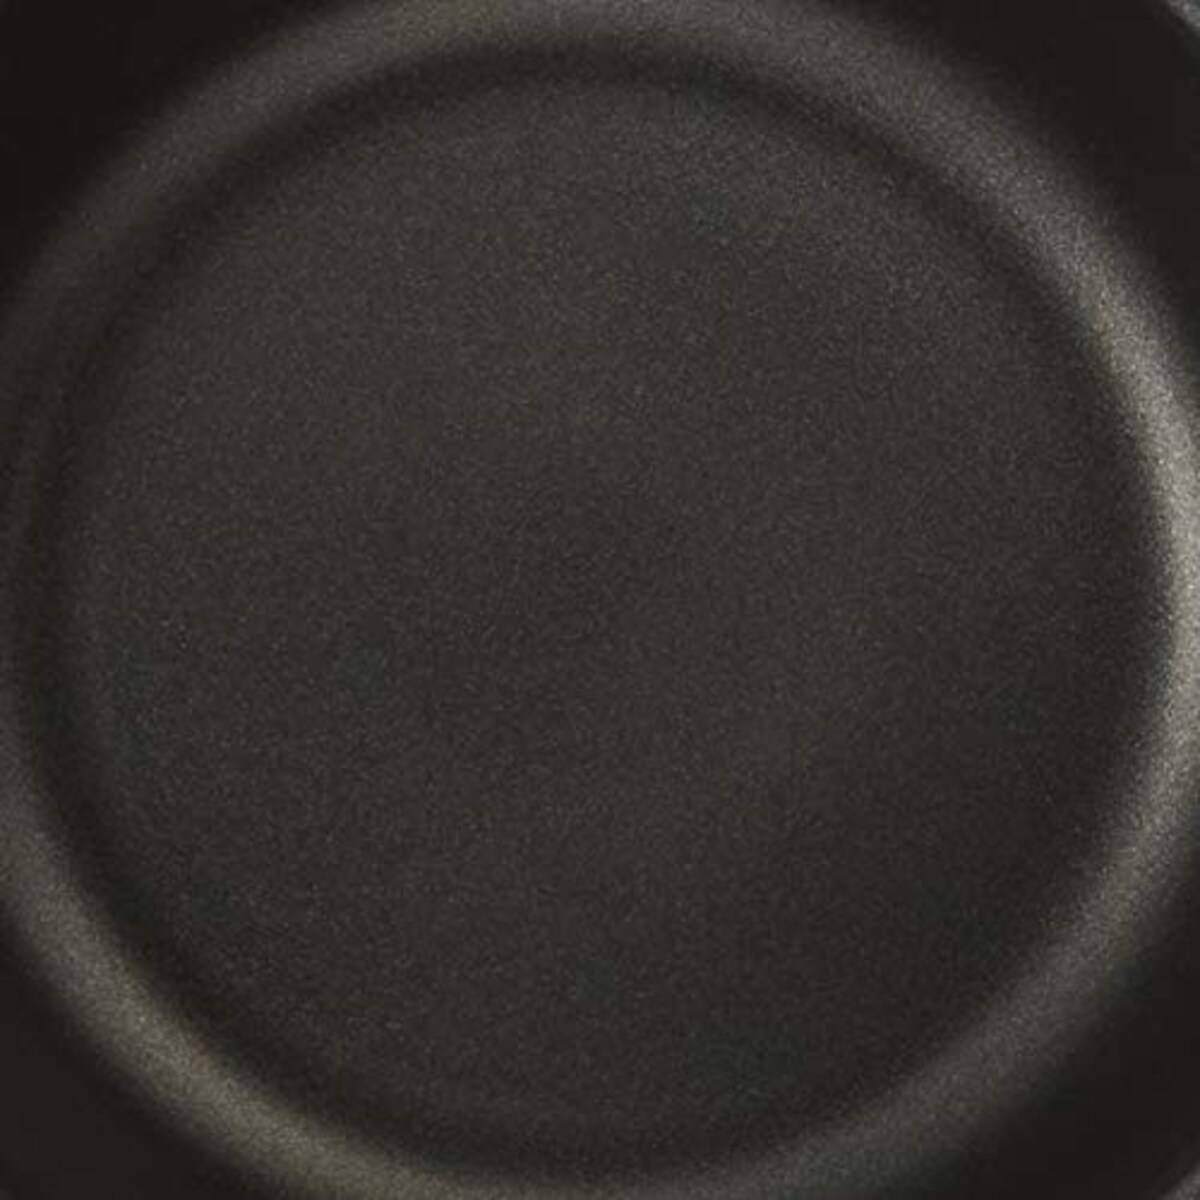  和平フレイズ(Wahei freiz) 2~3人分 深型フライパン いため鍋 21cm ブルー 焼く 炒める 煮る 茹でる 揚げる ふっ素樹脂加工 IH・ガス対応 ぷちキット RB-1901画像5 